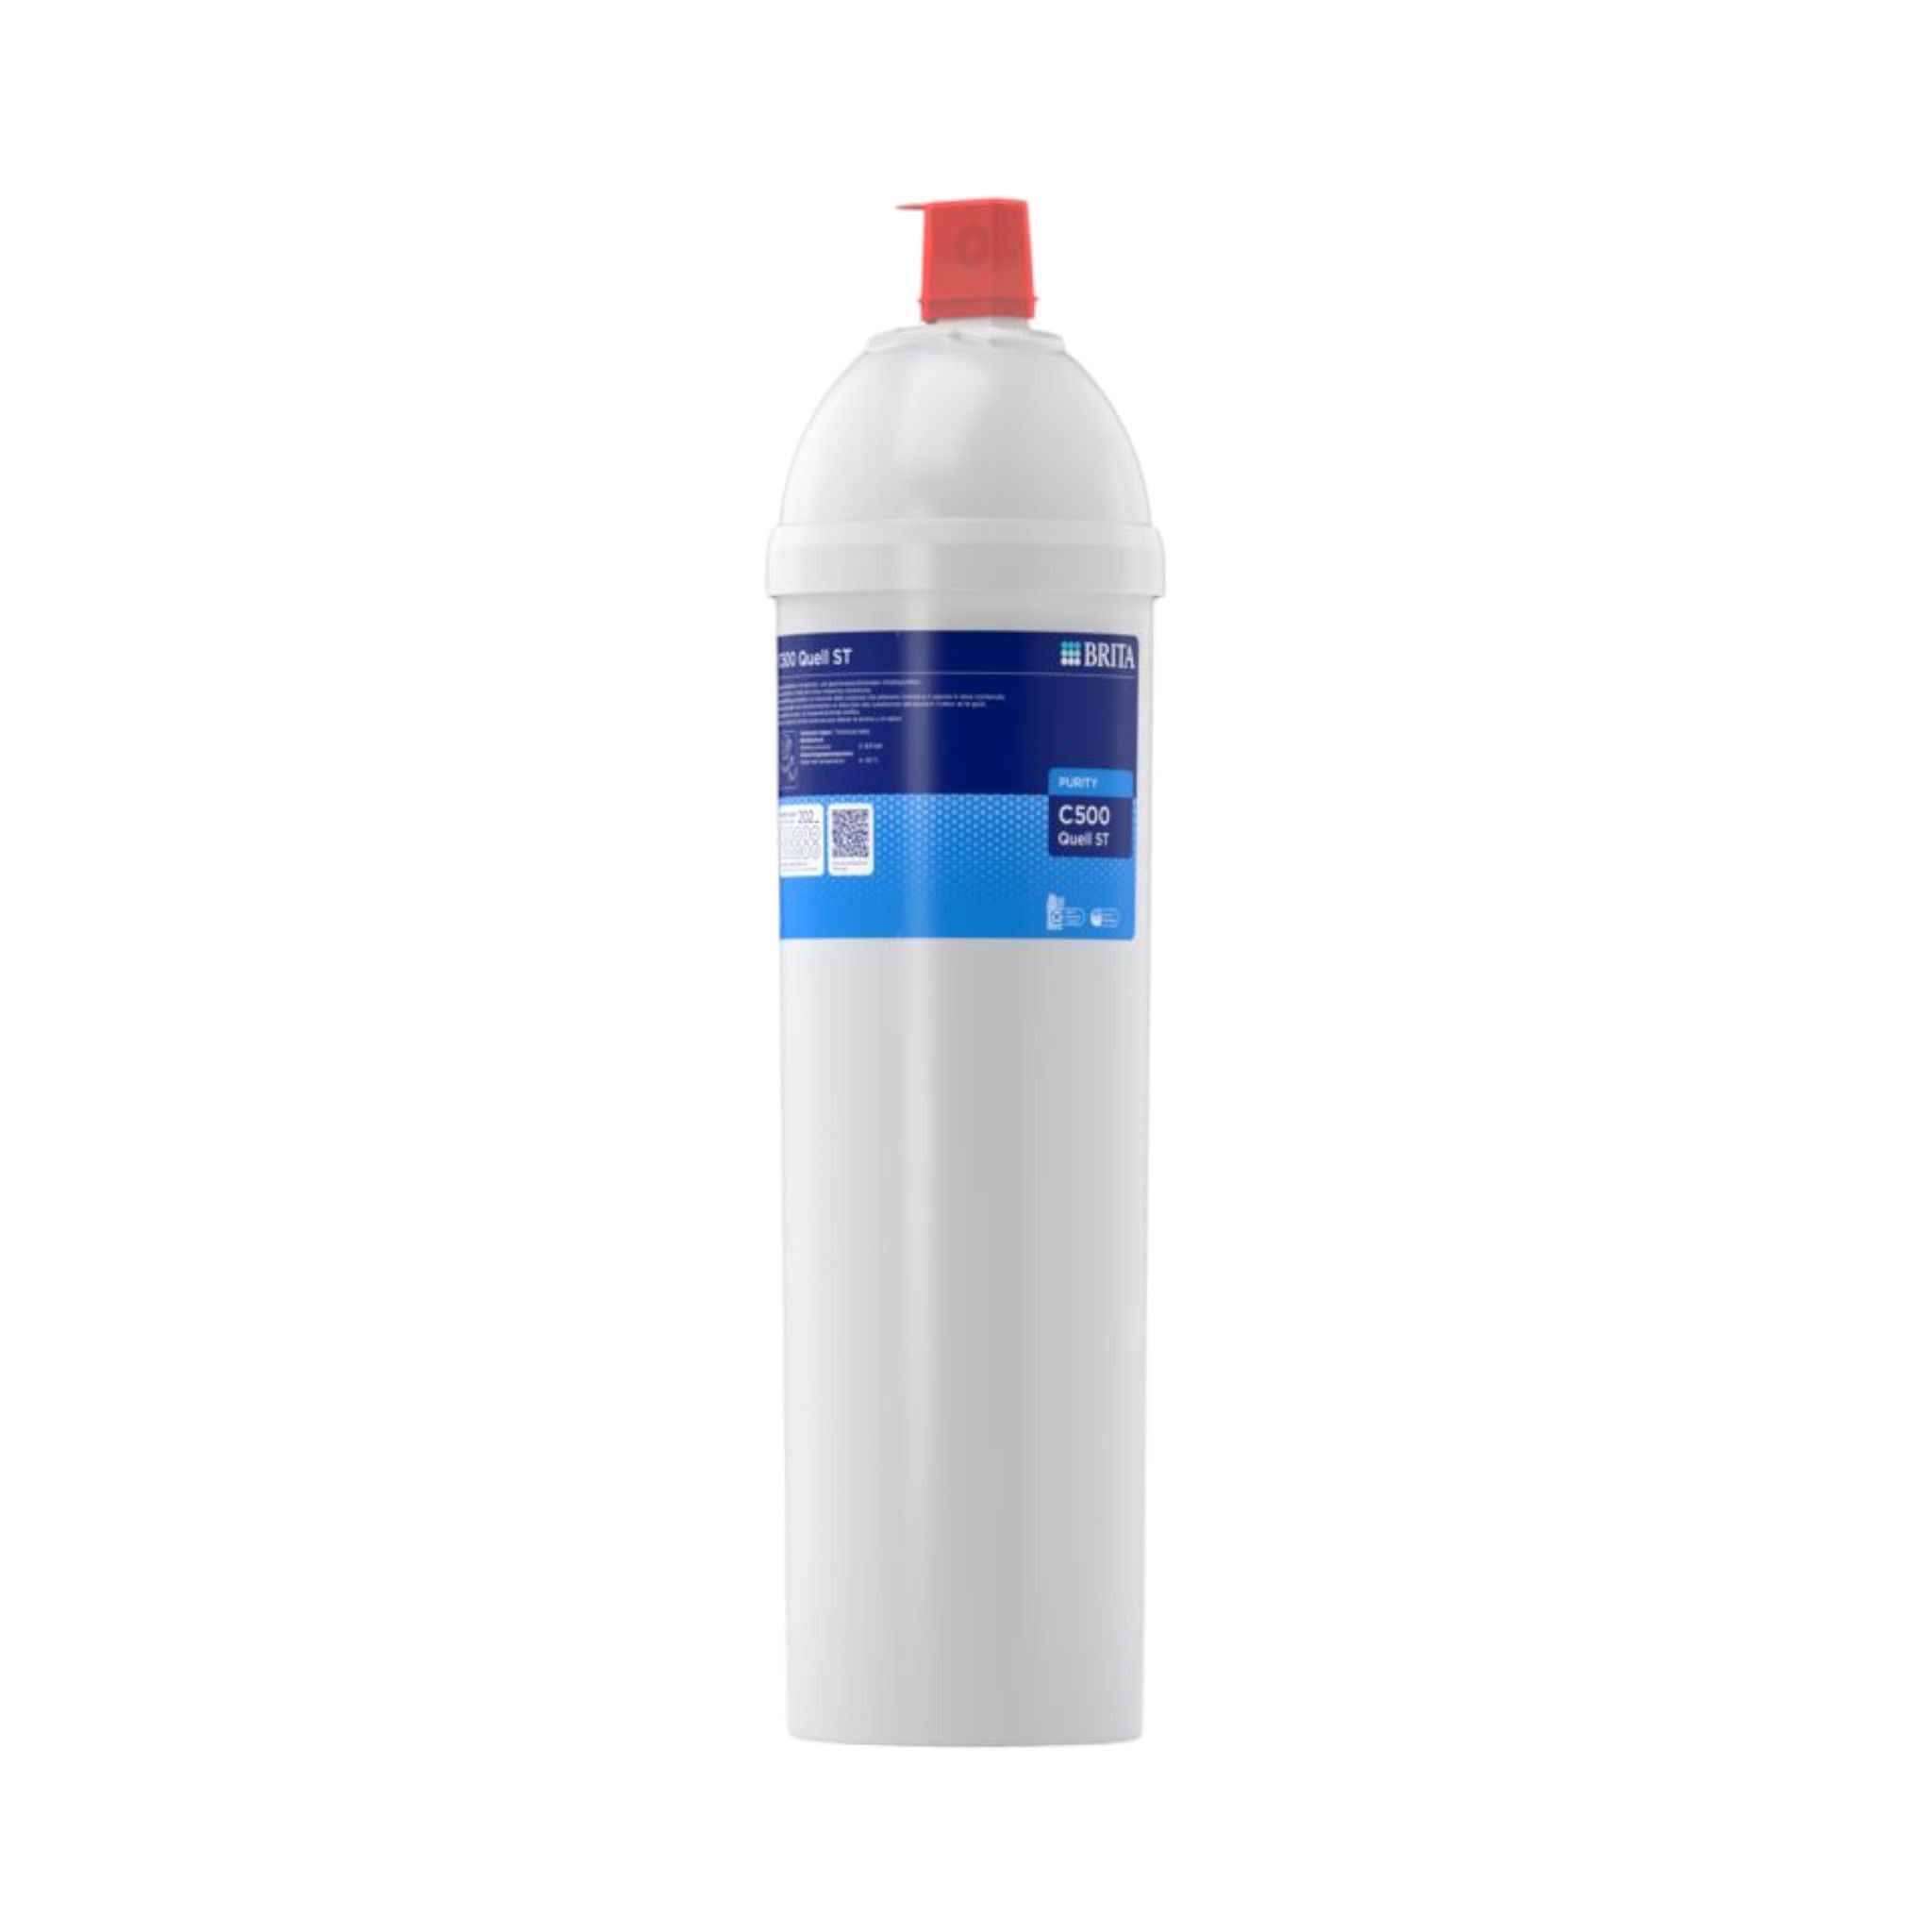 Brita C500 Wasserfilter für gleichbleibende Wasserqualität